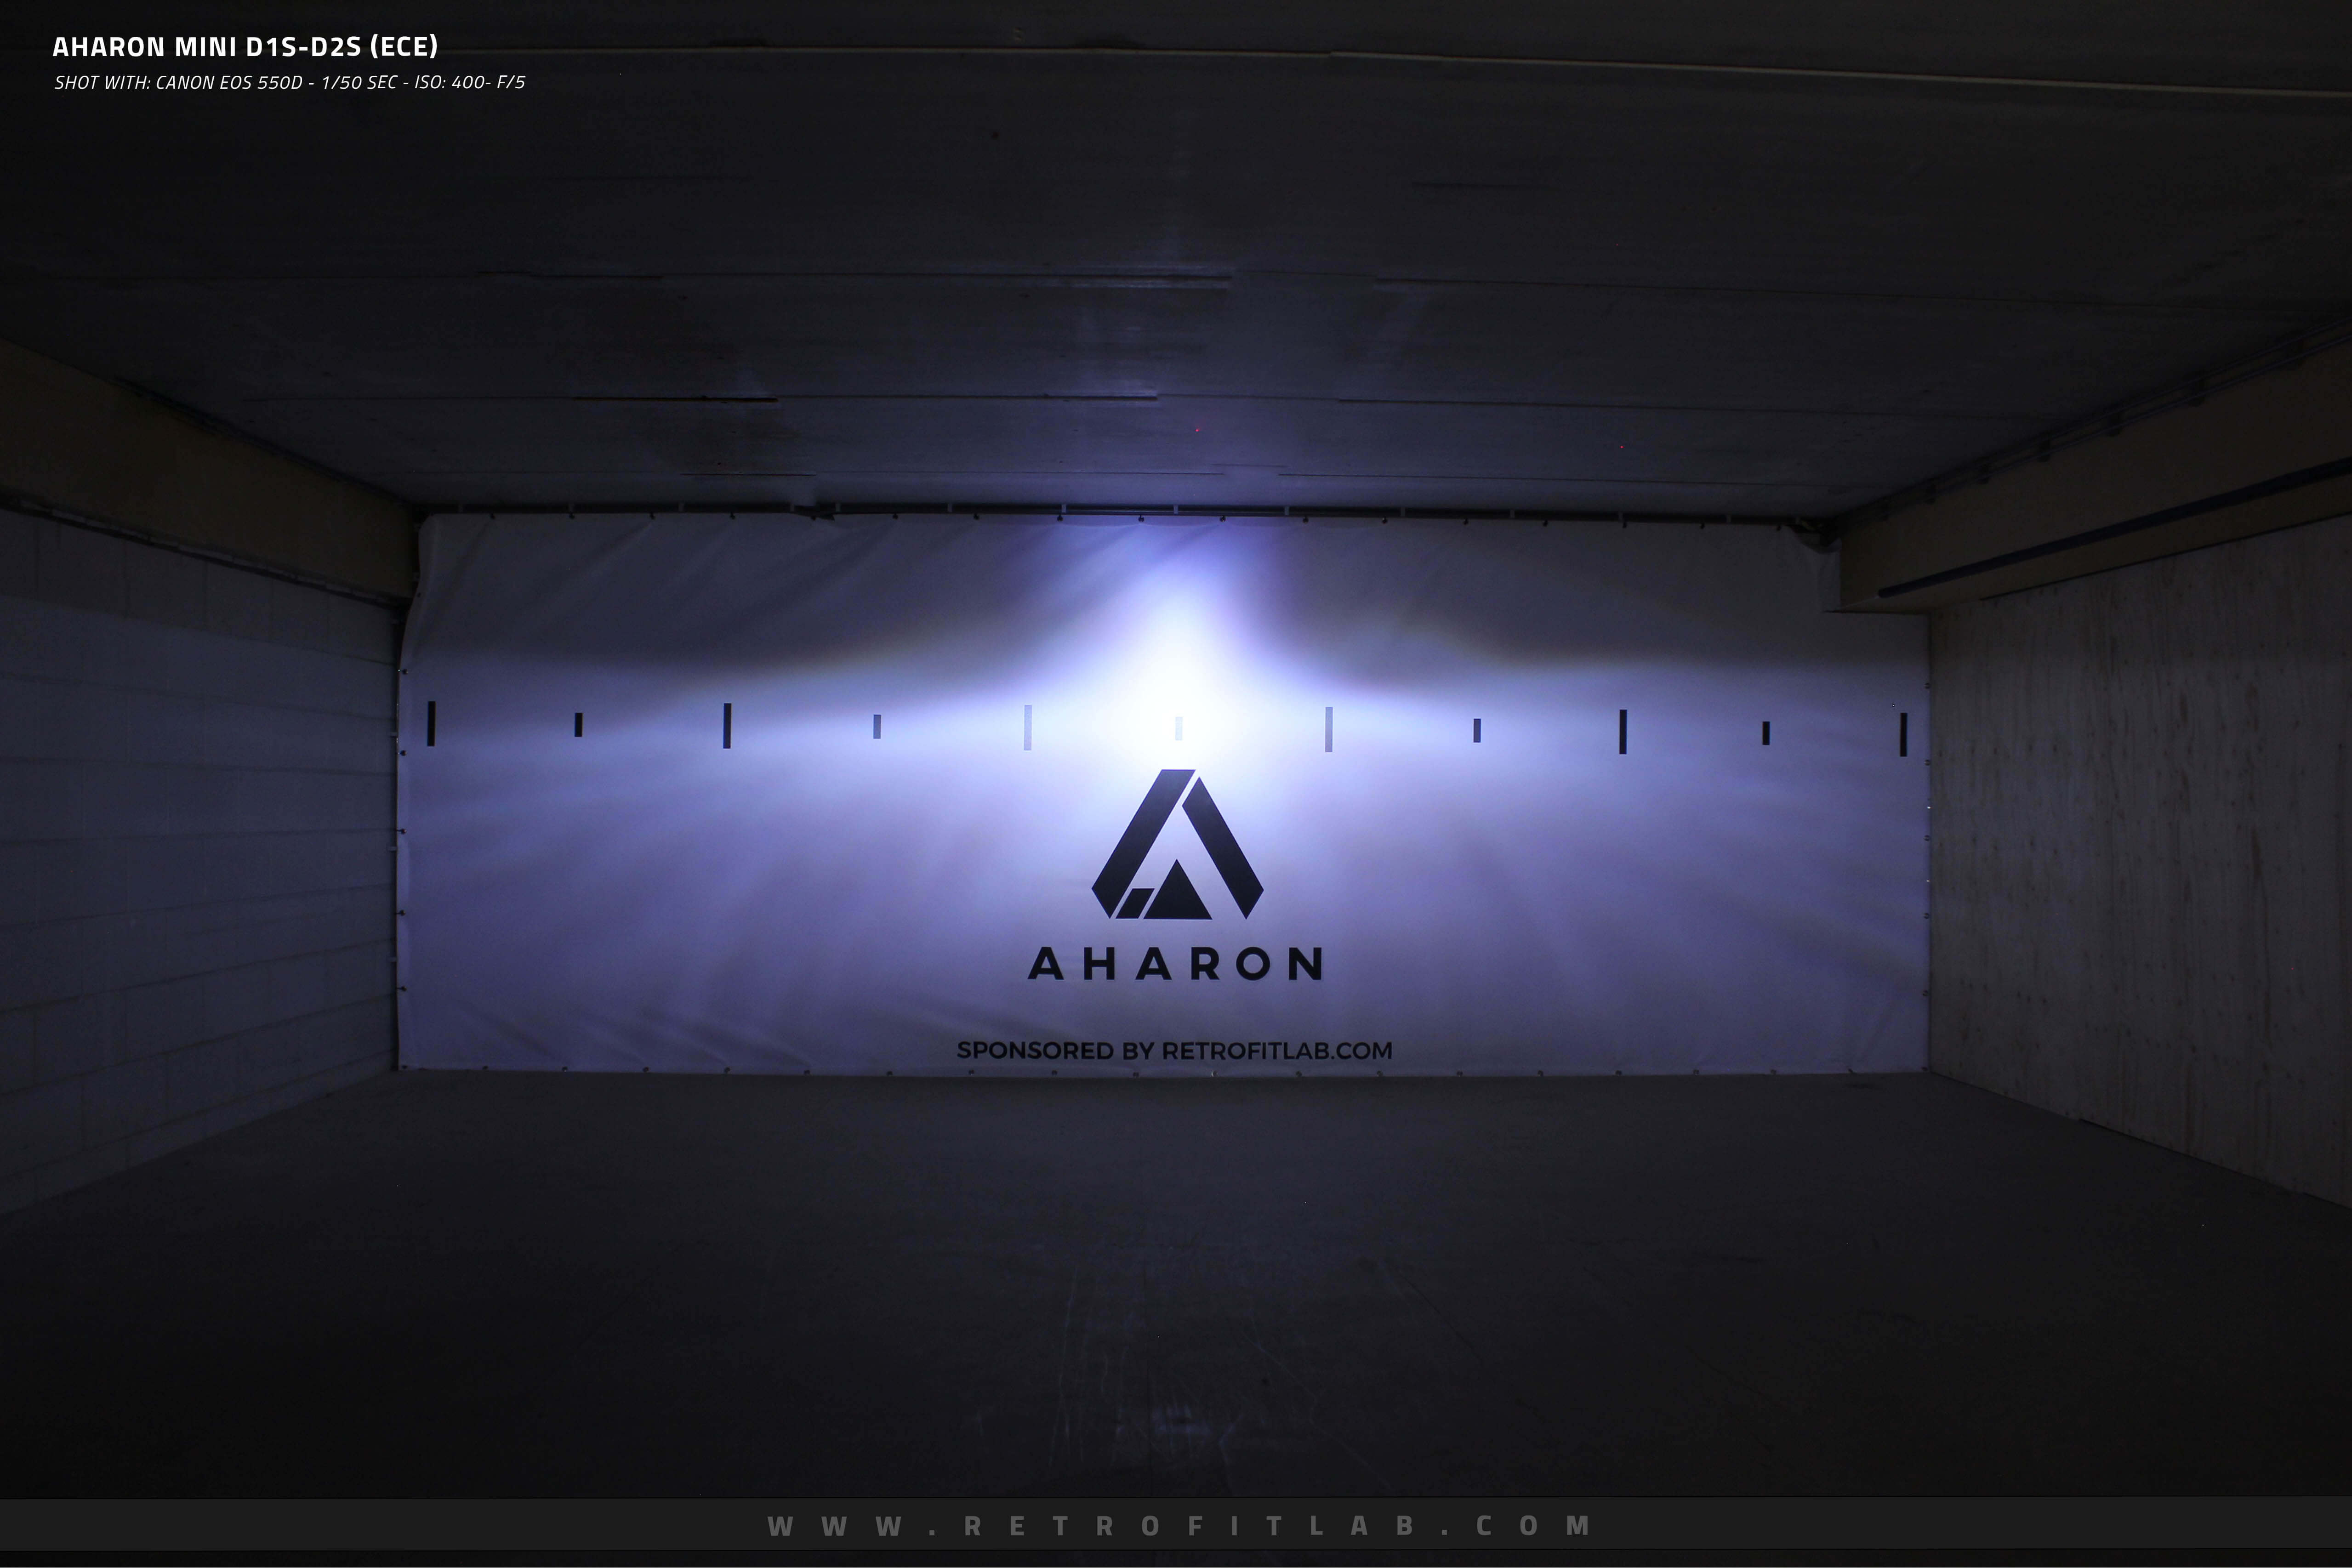 Aharon Mini D1S / D2S ECE - Bi-Xenon projectors